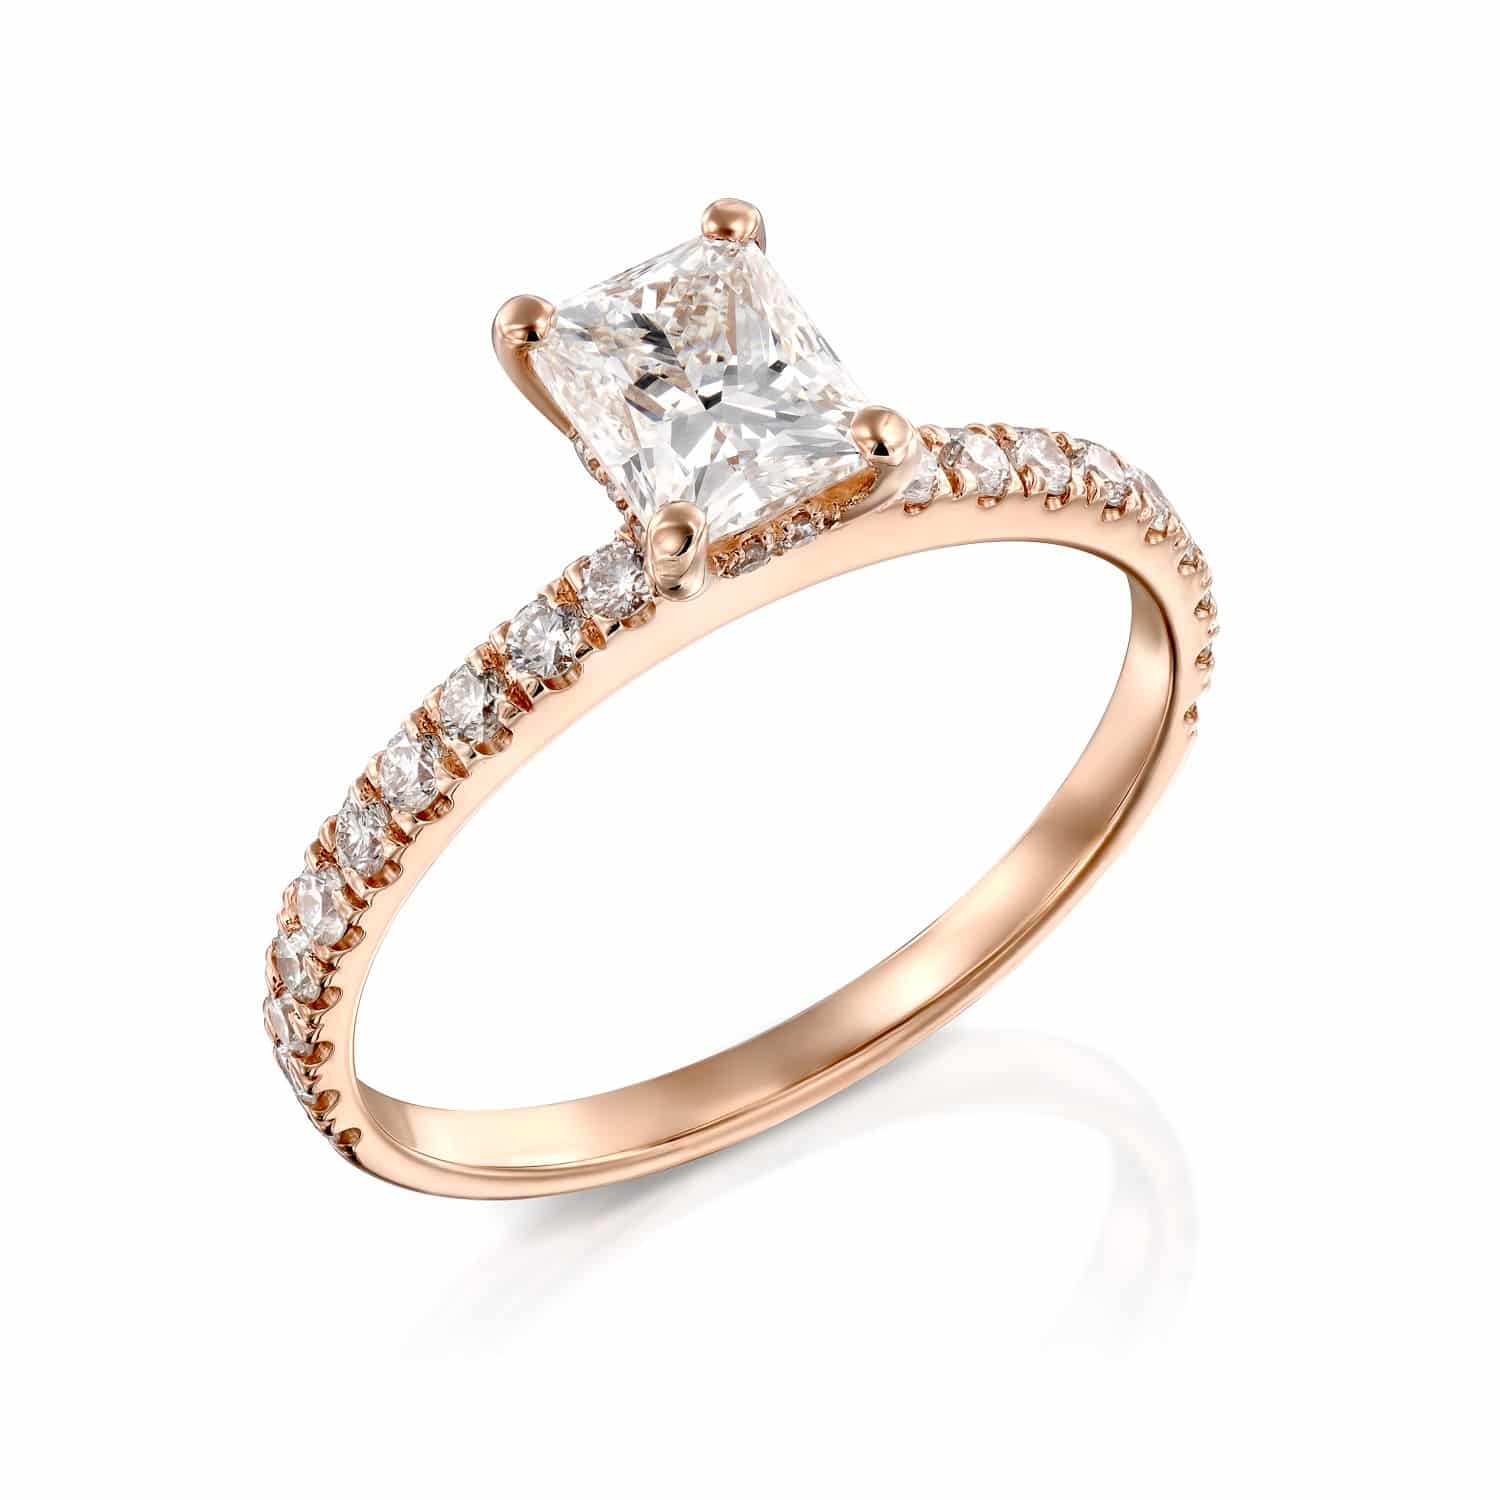 טבעת אירוסין נוצצת בחיתוך נסיכותי עם רצועת זהב ורדרד ויהלומים משובצים בפאווה לאורך הצדדים, המגלמים אלגנטיות ורומנטיקה. זה טבעת דגם מיילי